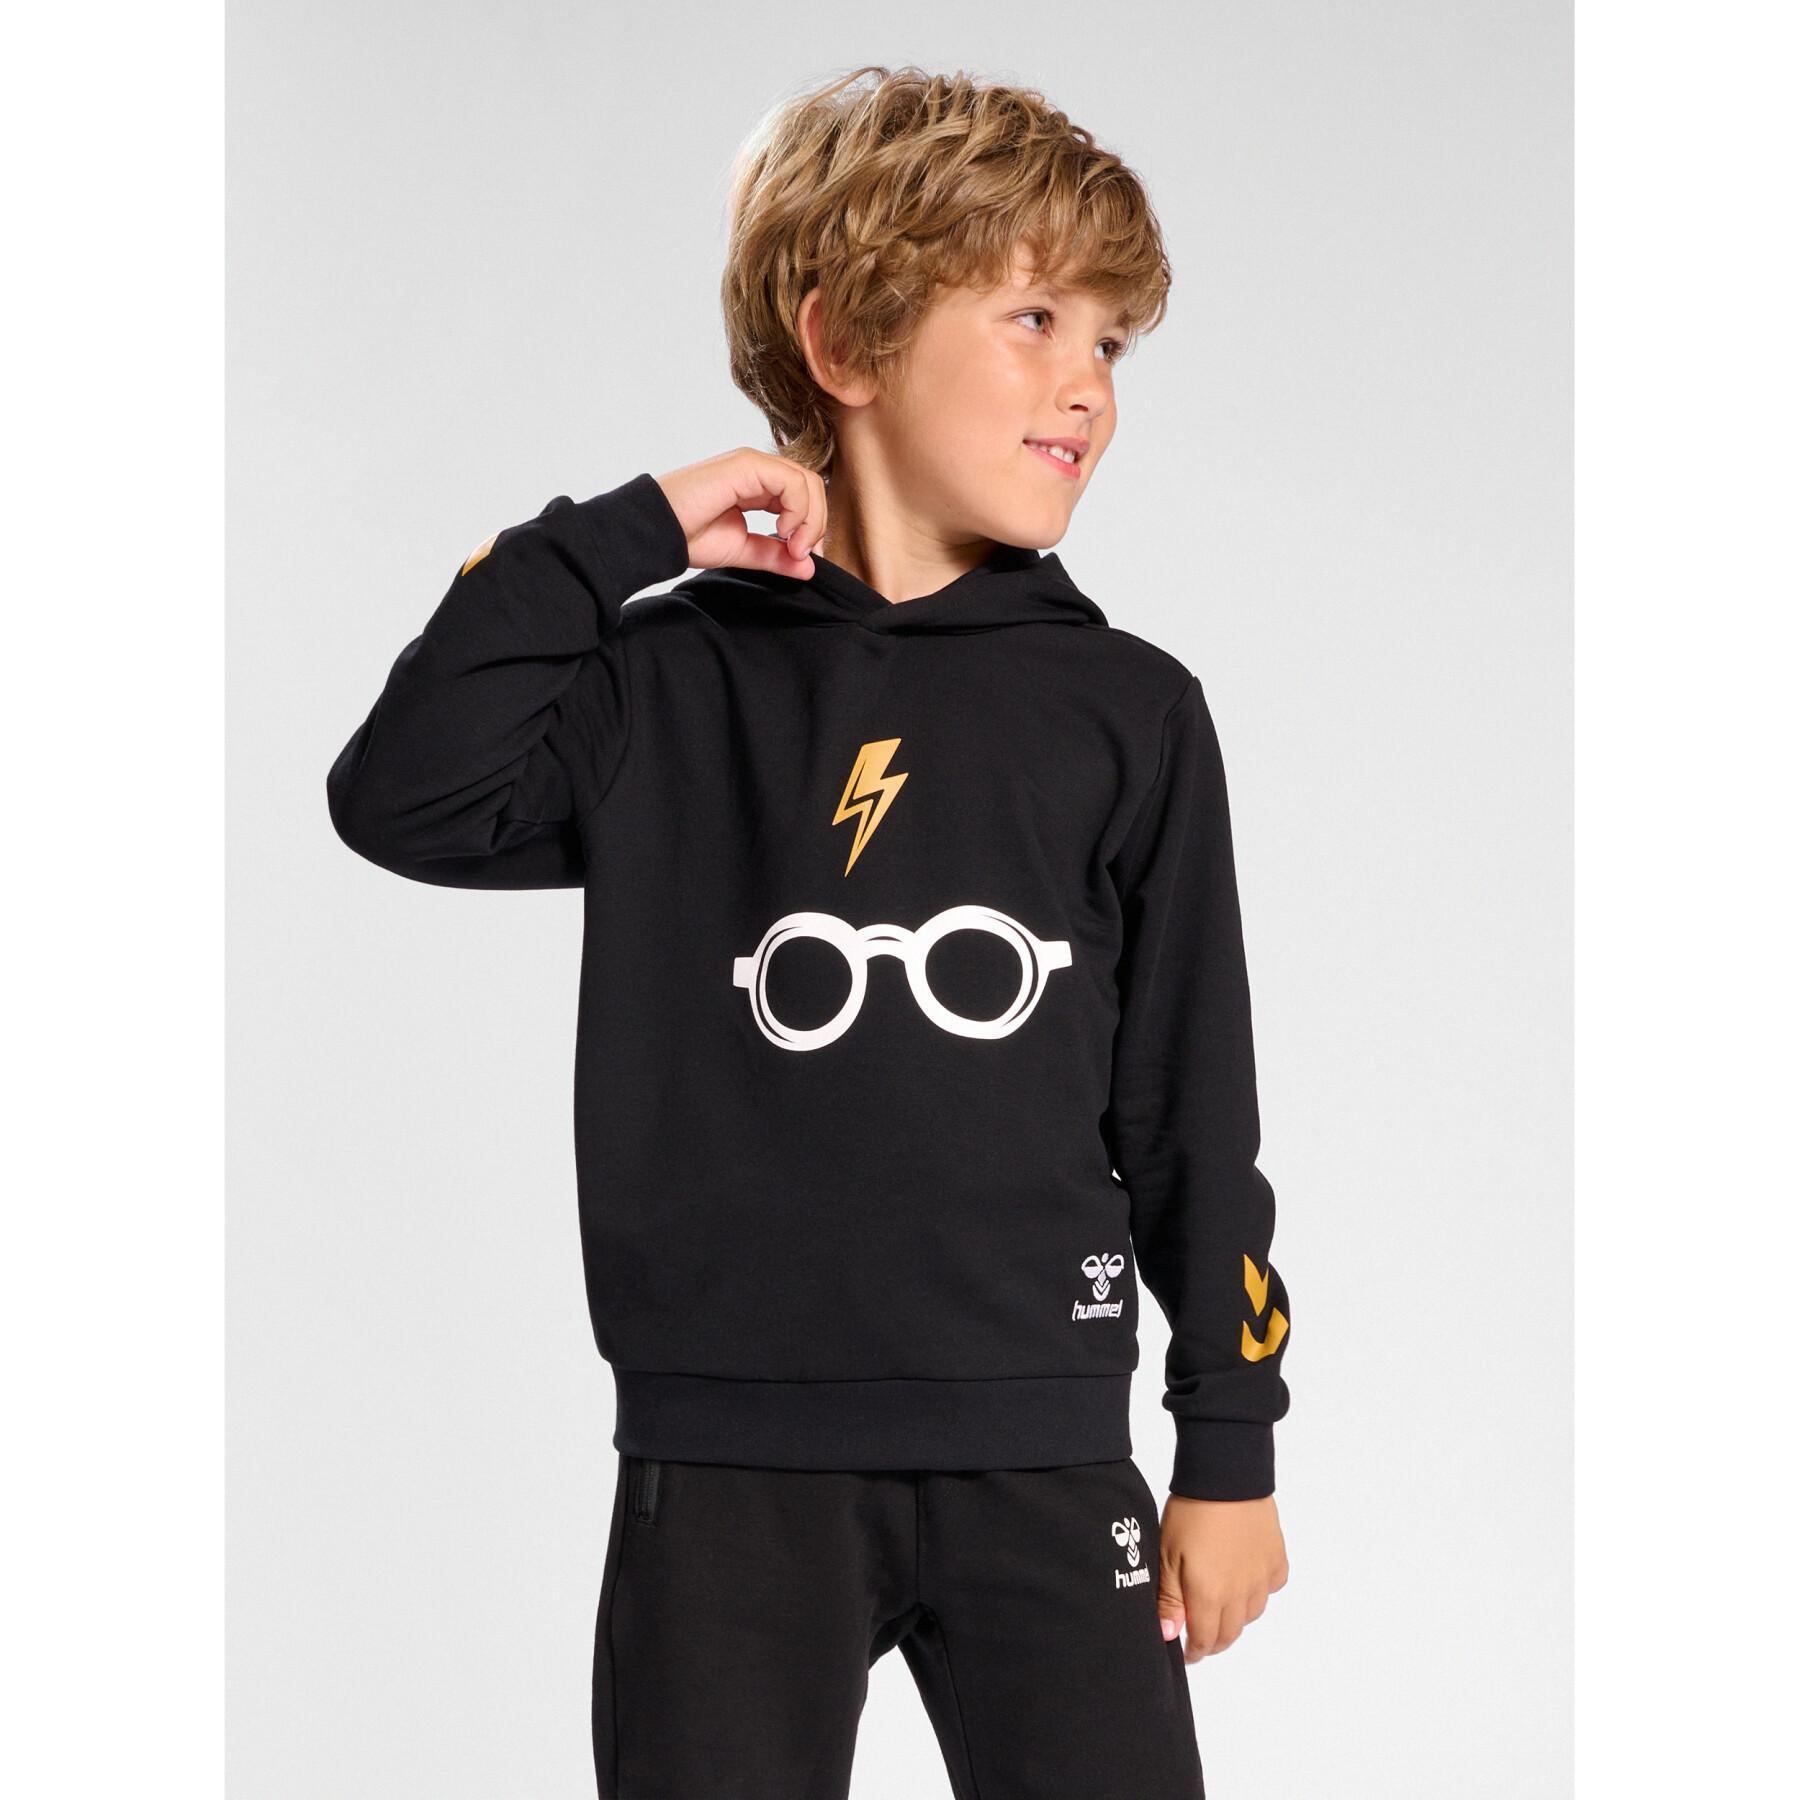 Children's hoodie Hummel Harry Potter